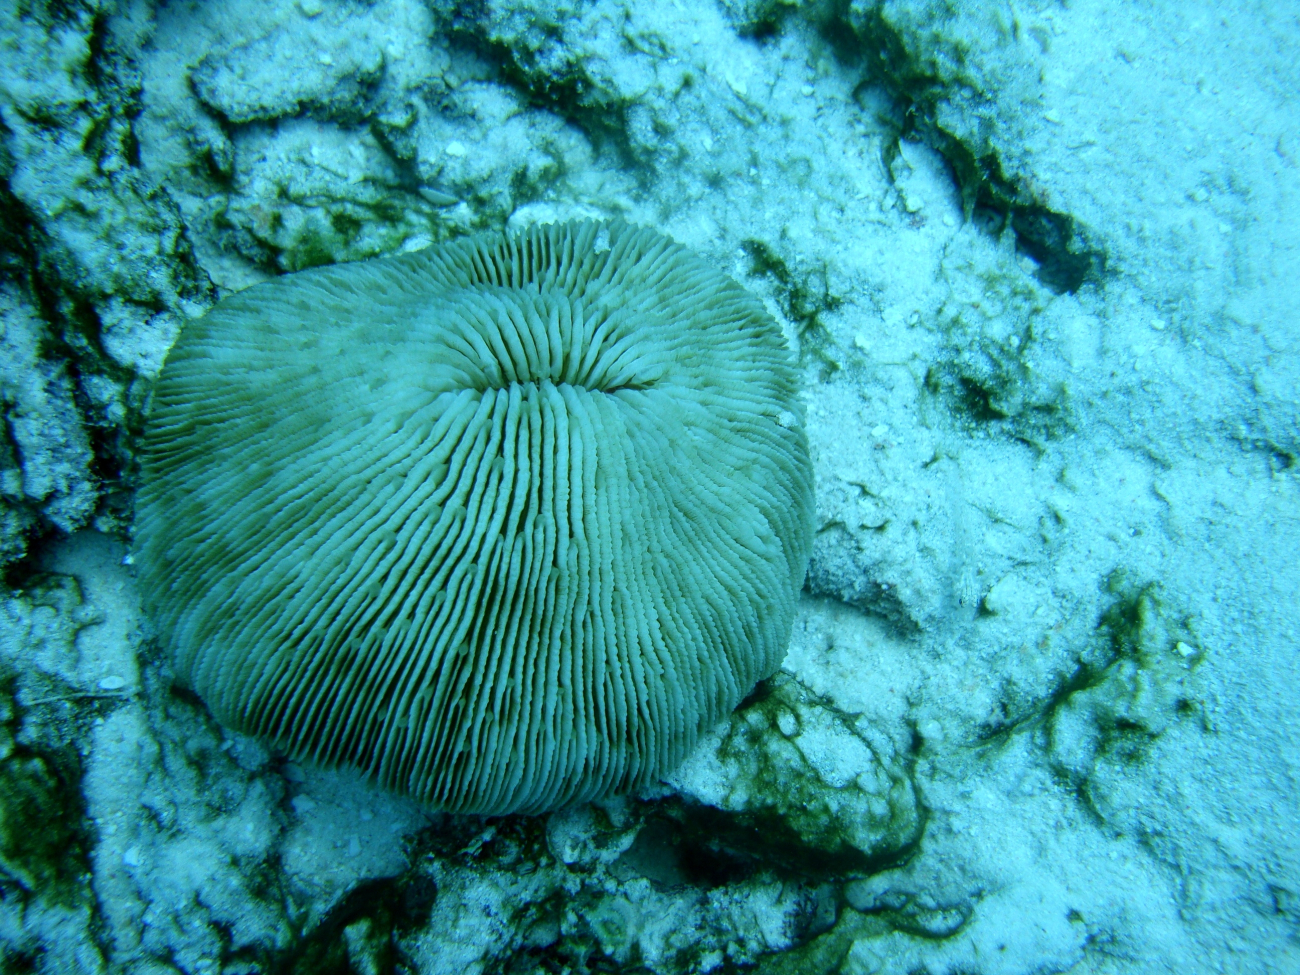 Fungiidae coral Fungia fungites